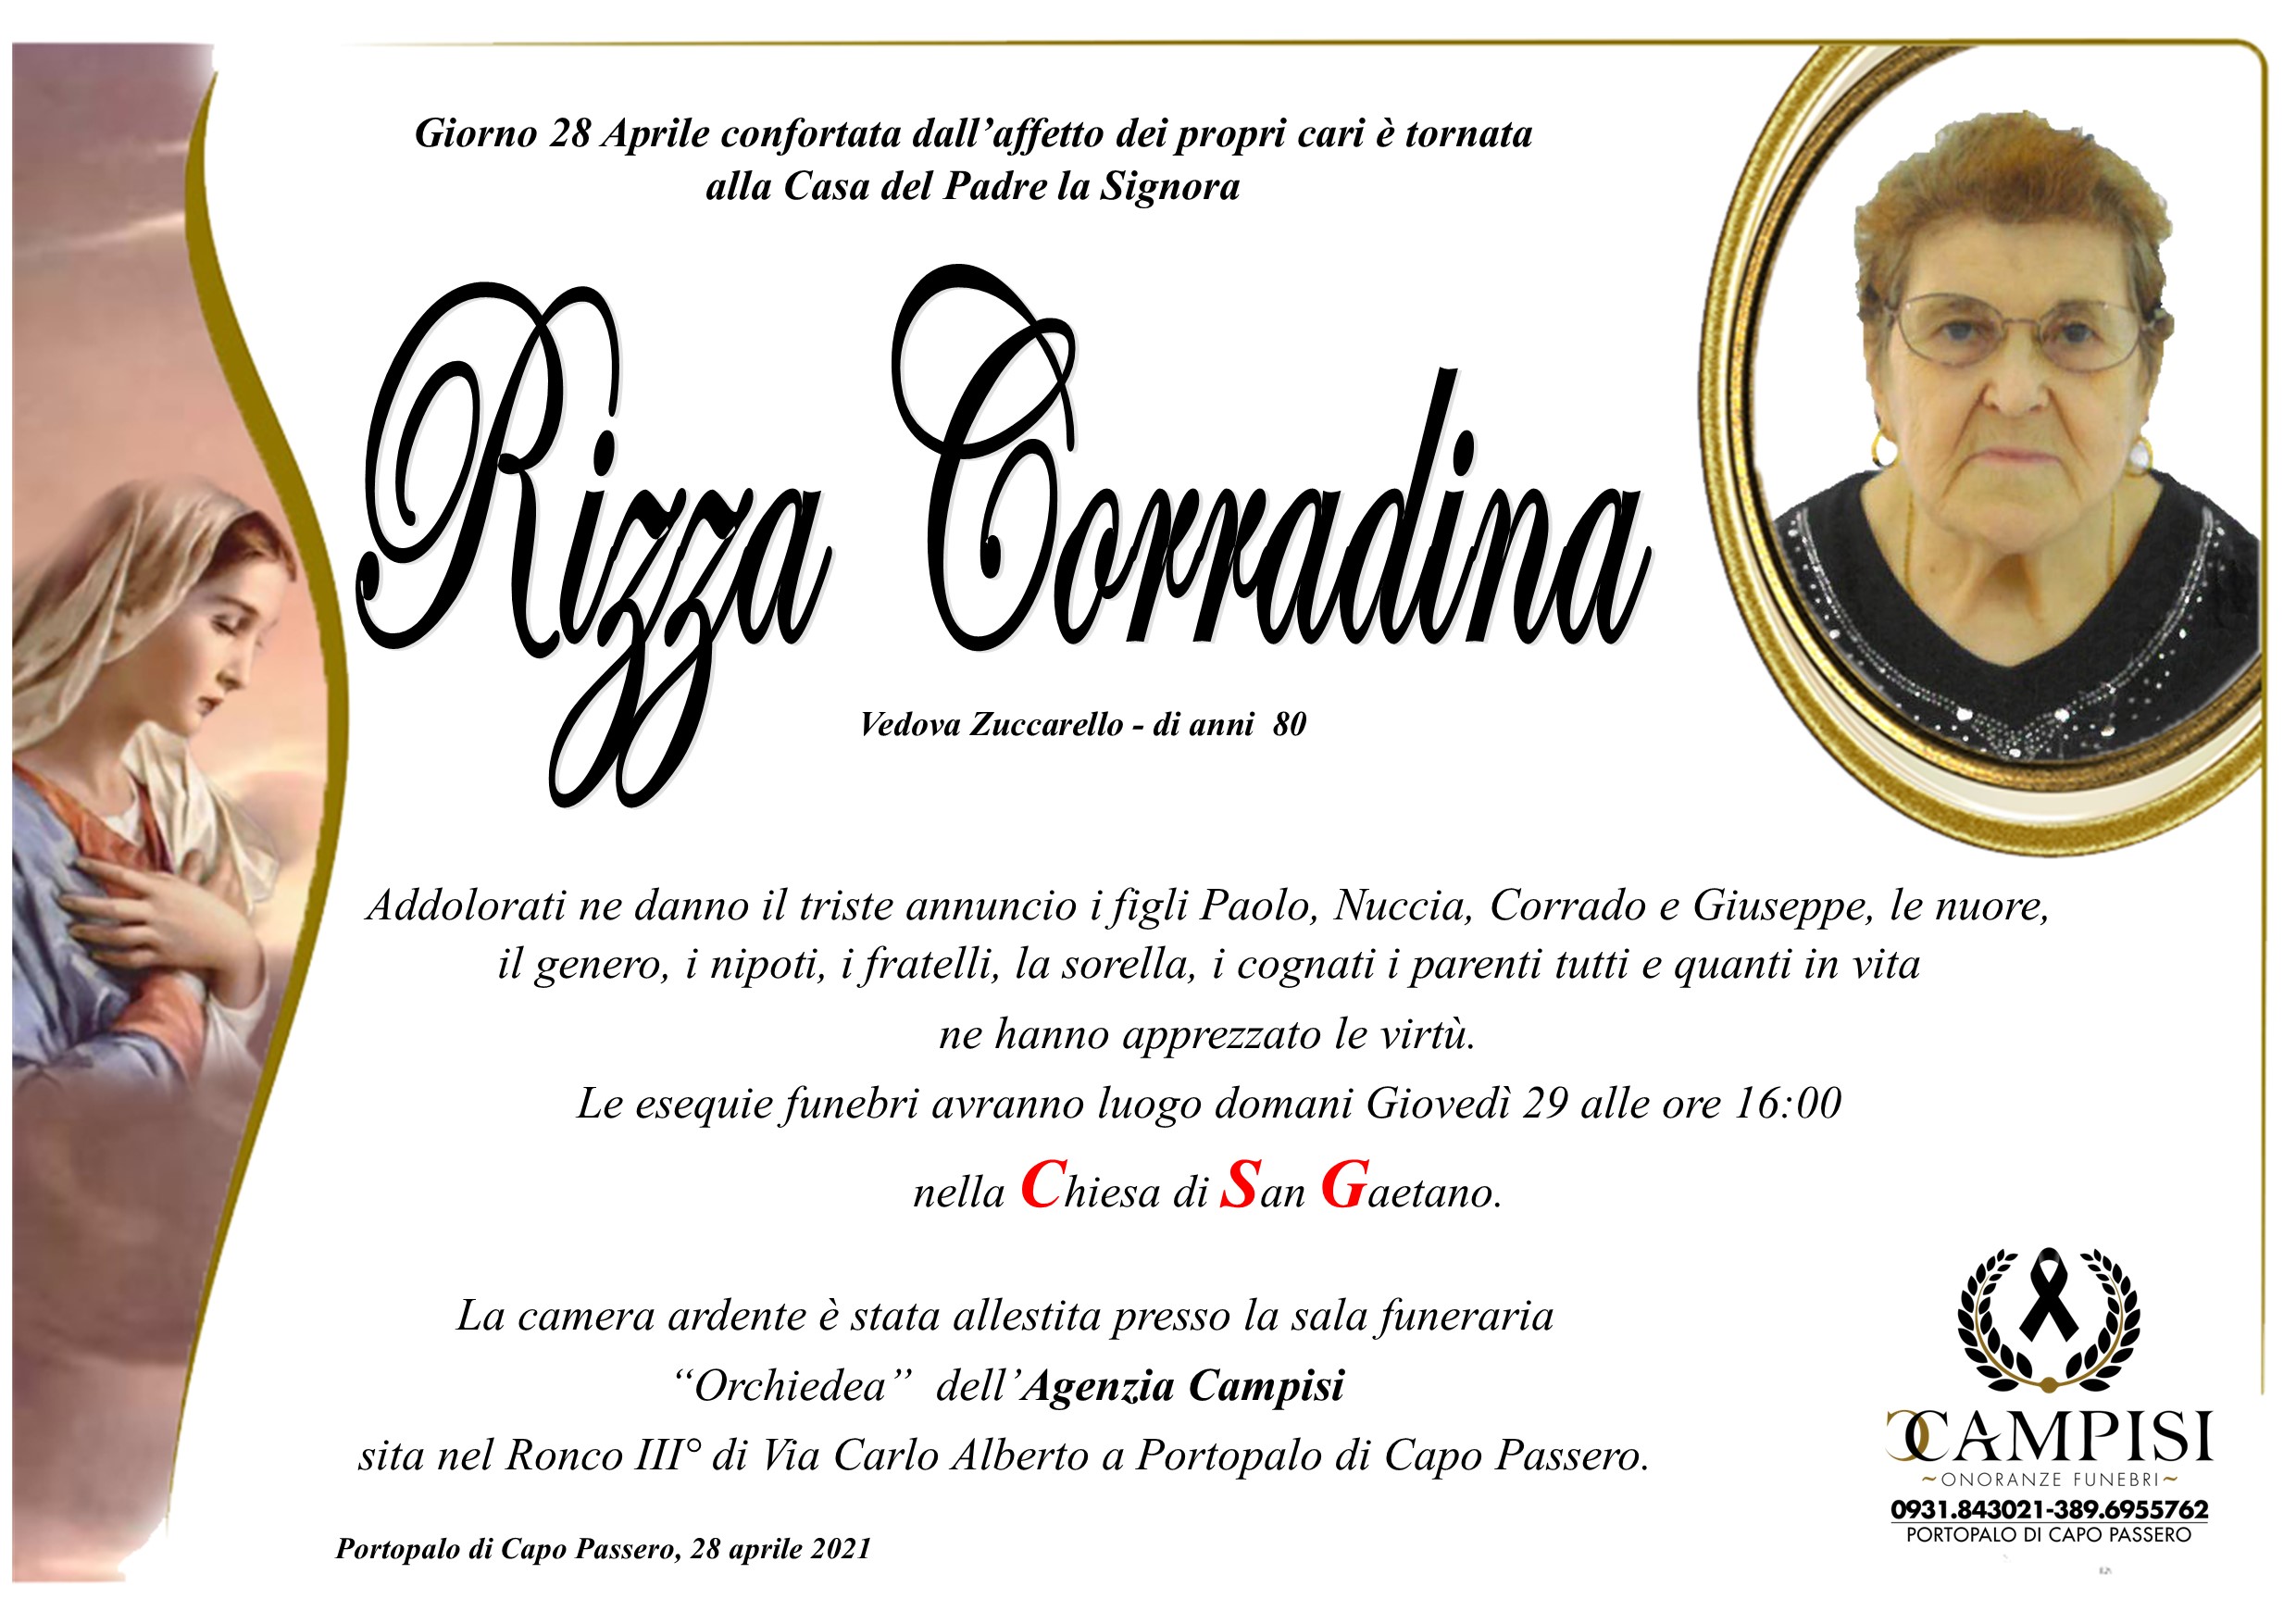 Rizza Corradina